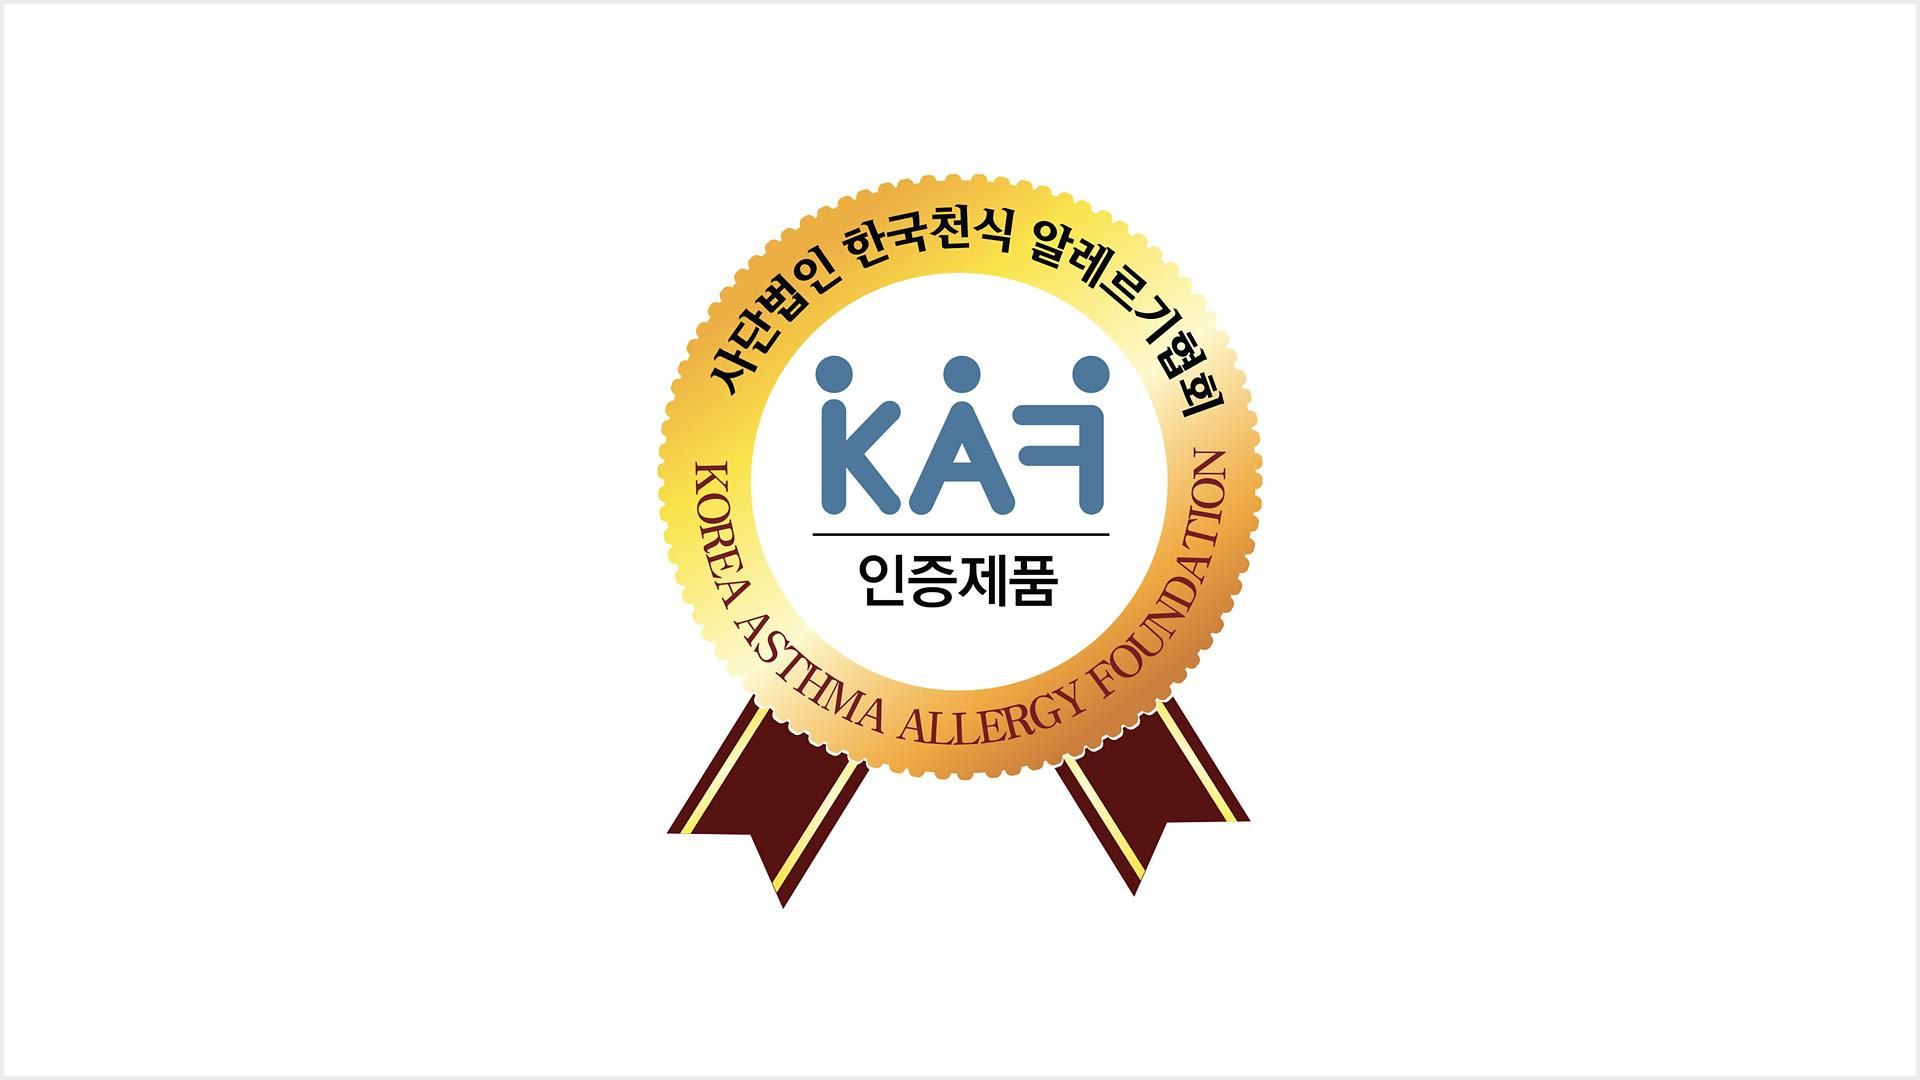 한국천식알레르기 협회(KAF) 로고